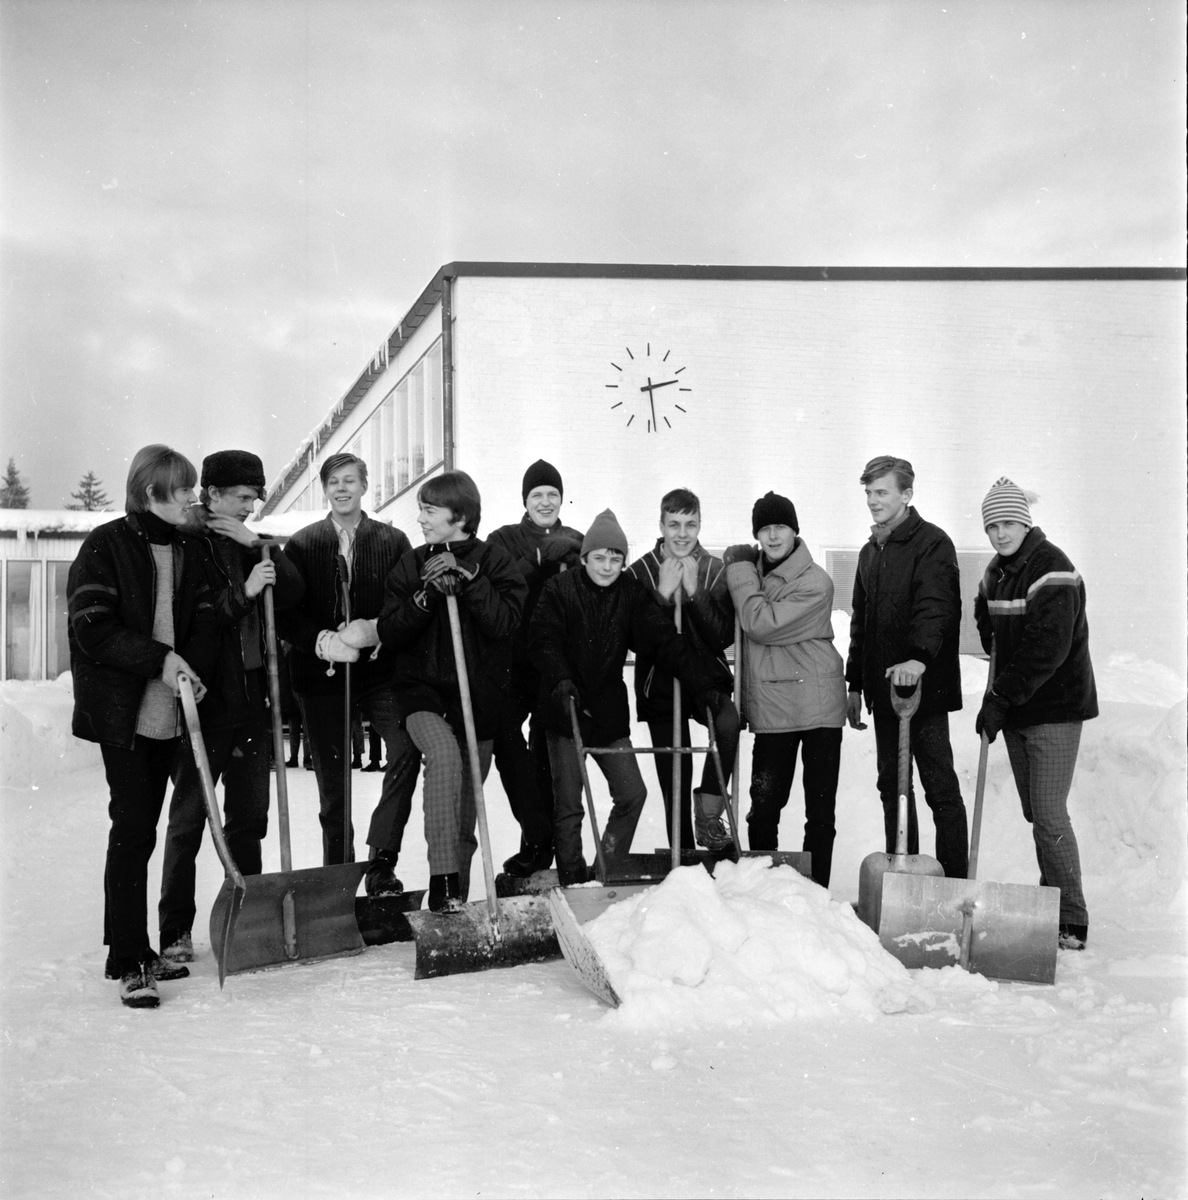 Arbrå,
Centralskolans aktion för ferieresa,
Februari 1967